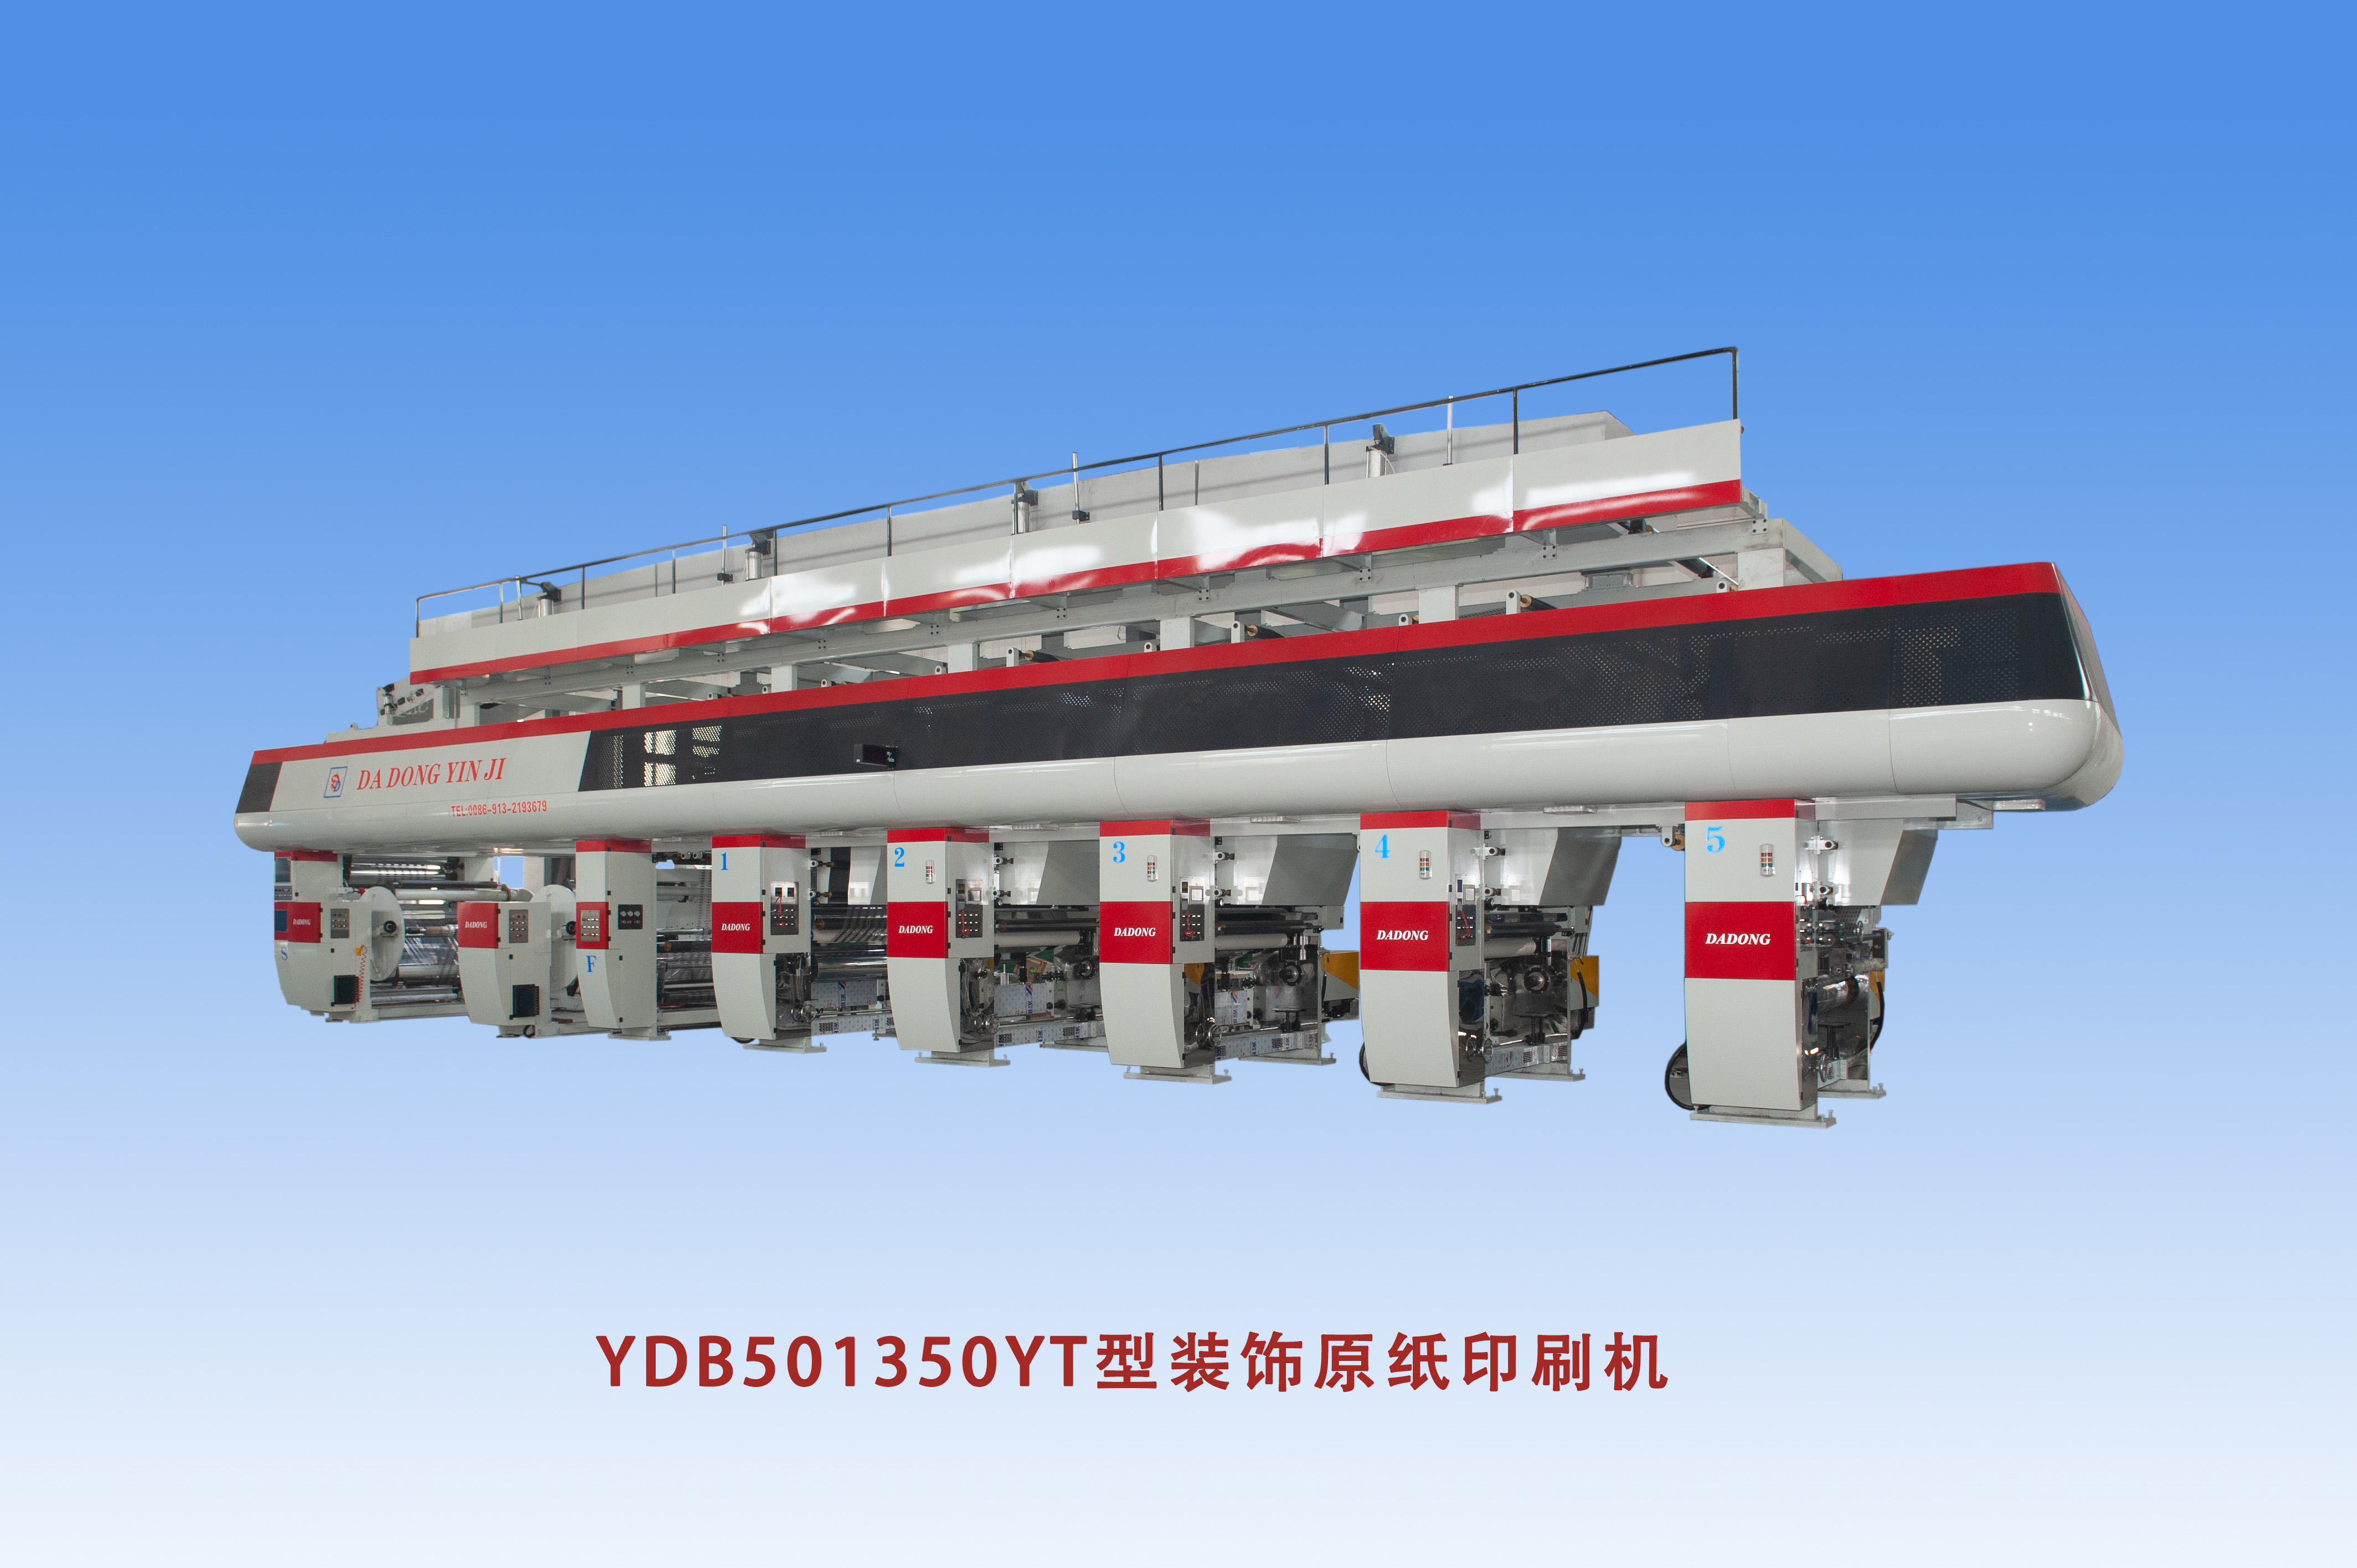 YDB501350YT型装饰原纸波胆官方网站-波胆（中国）有限公司机